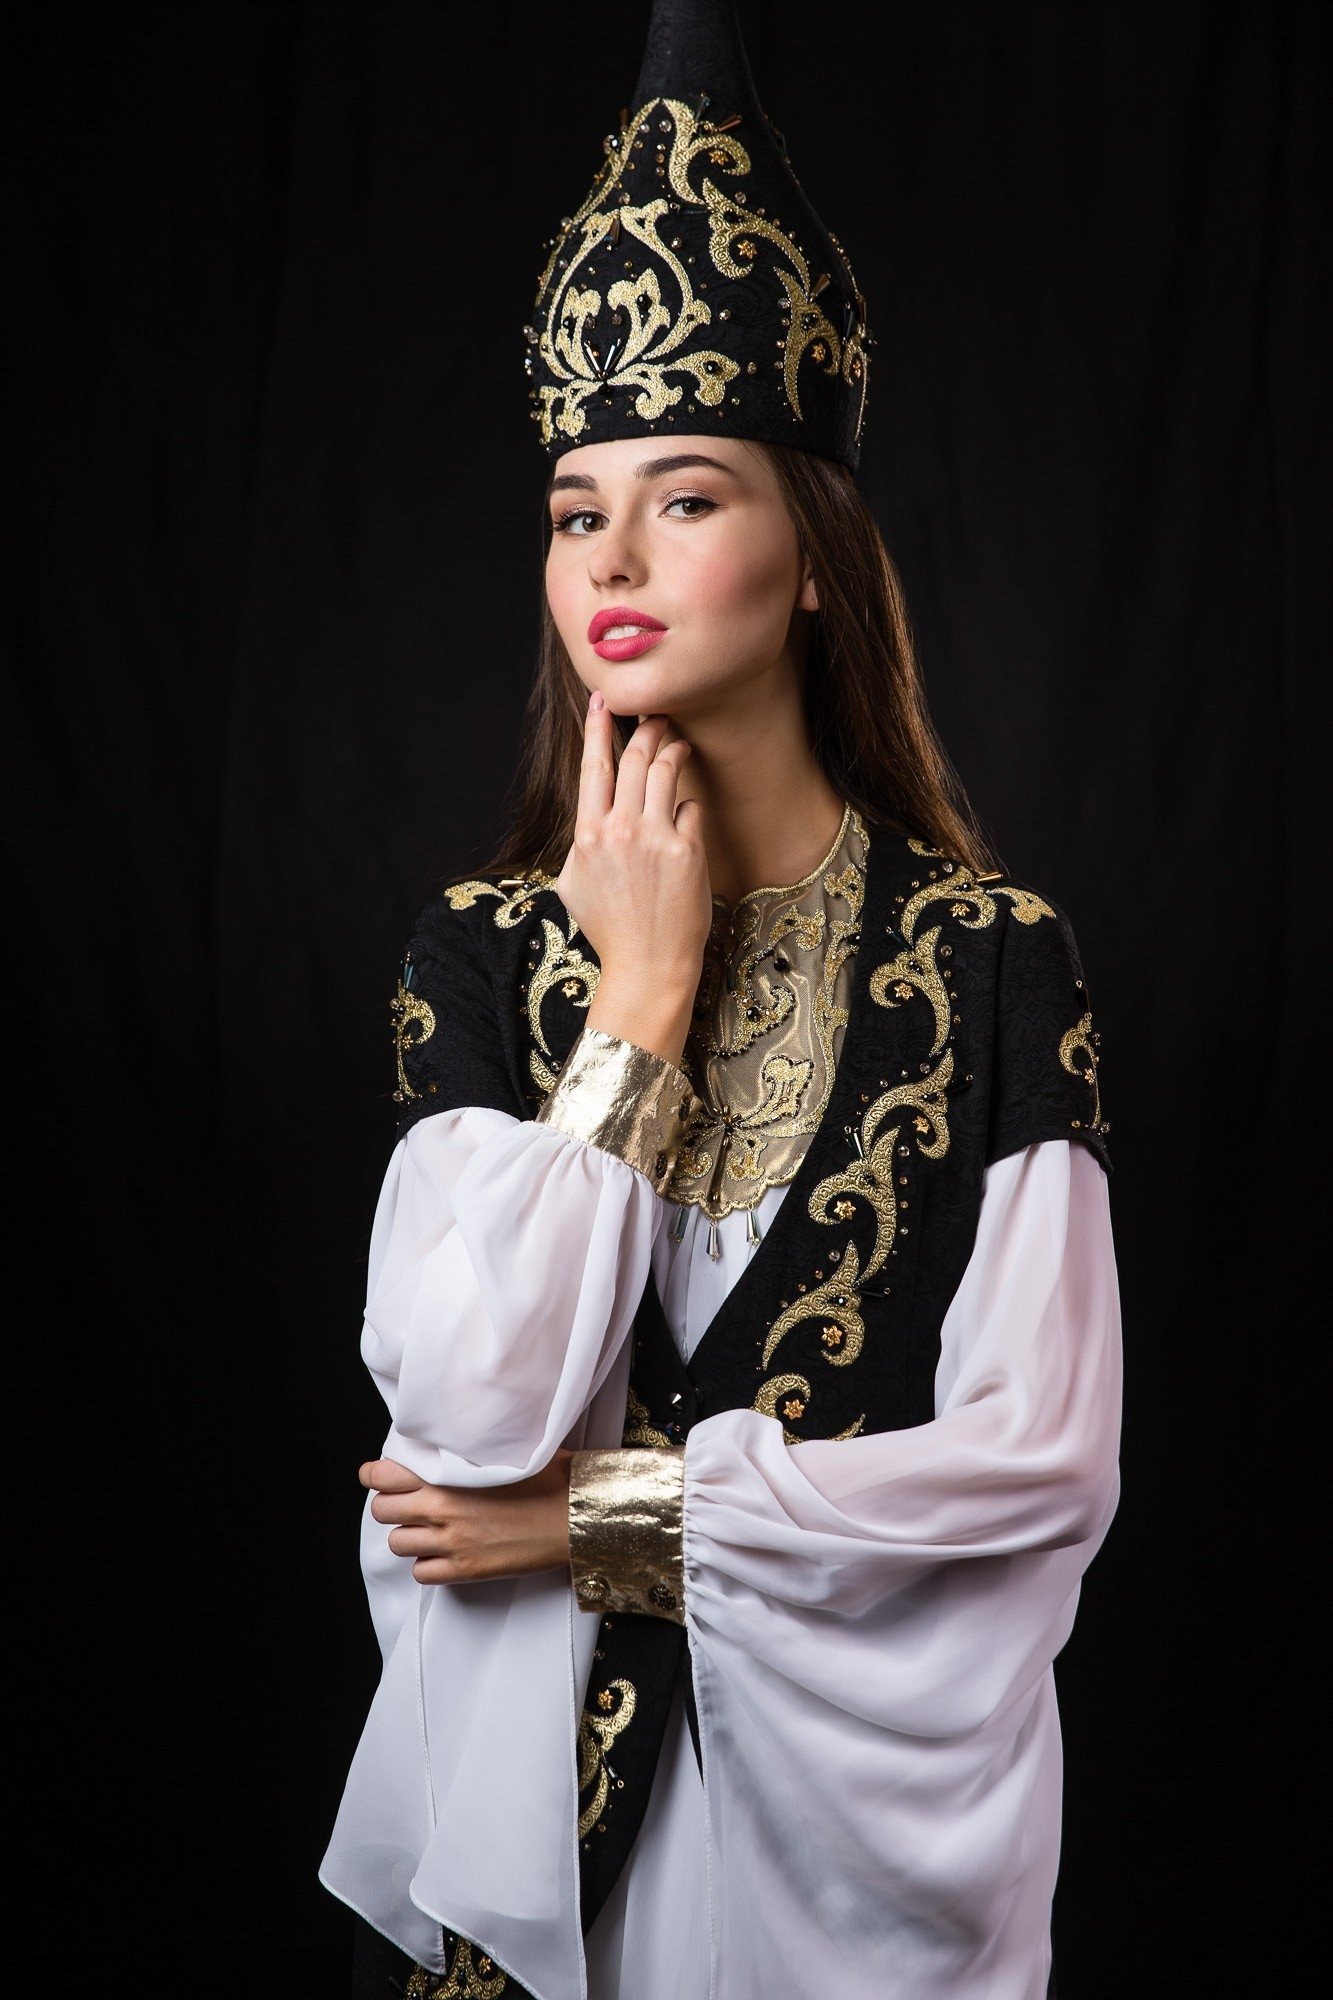 Девочка в татарском костюме